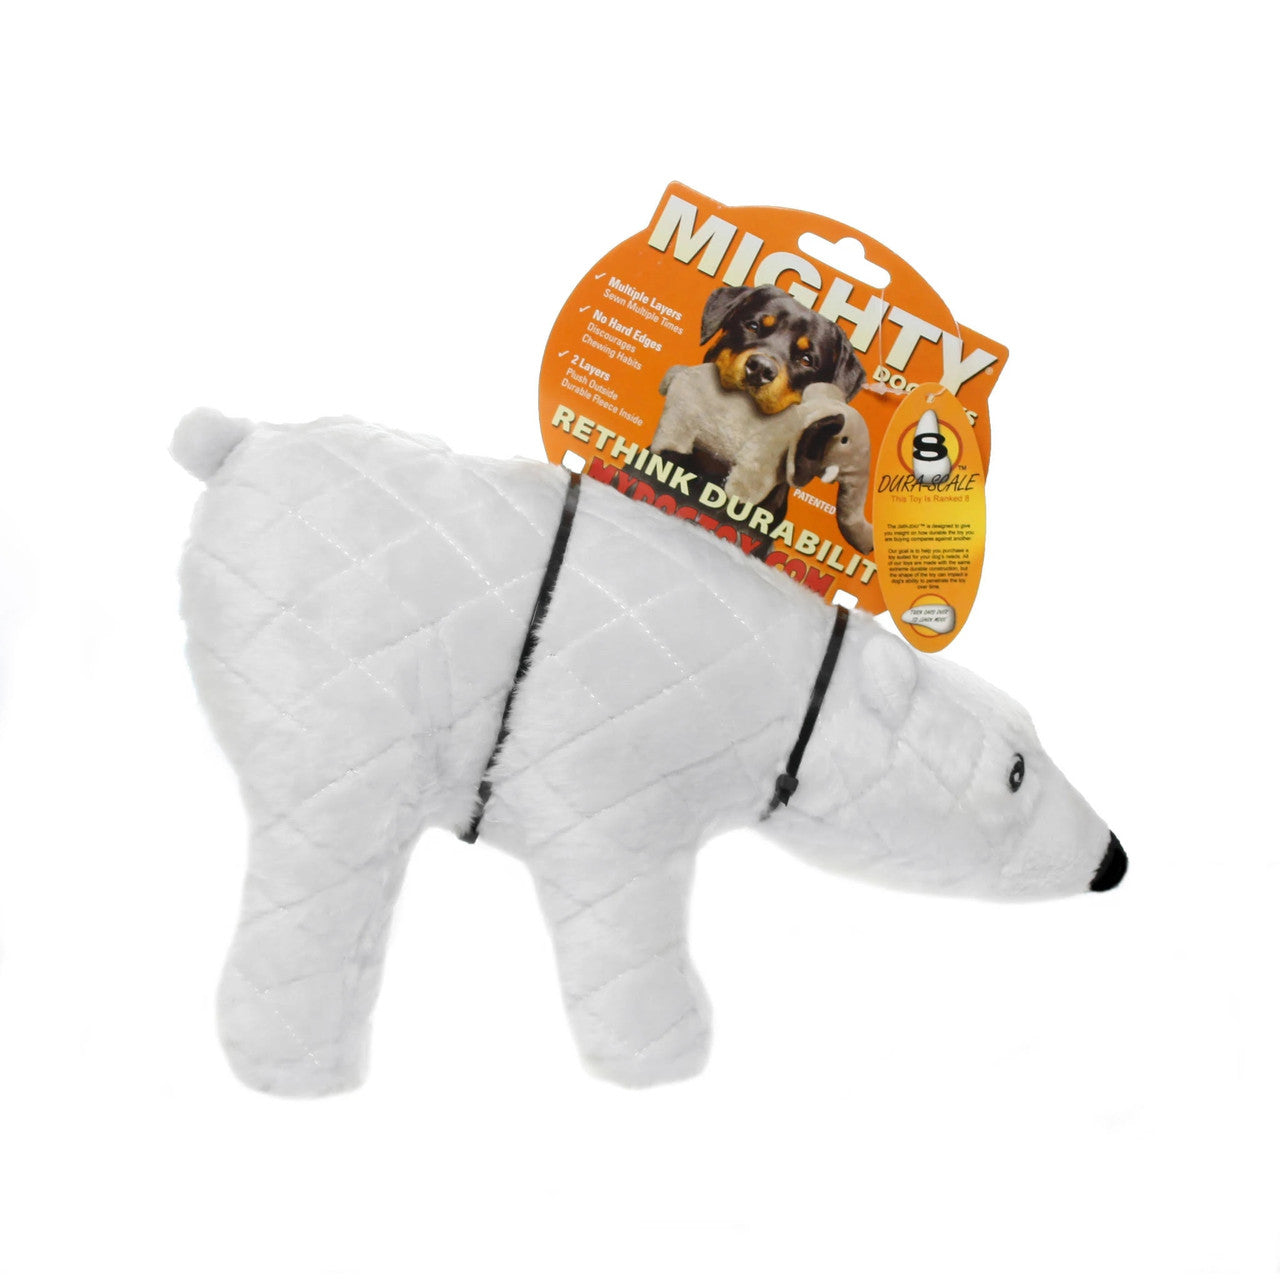 Mighty Arctic Polar Bear Dog 180181903953